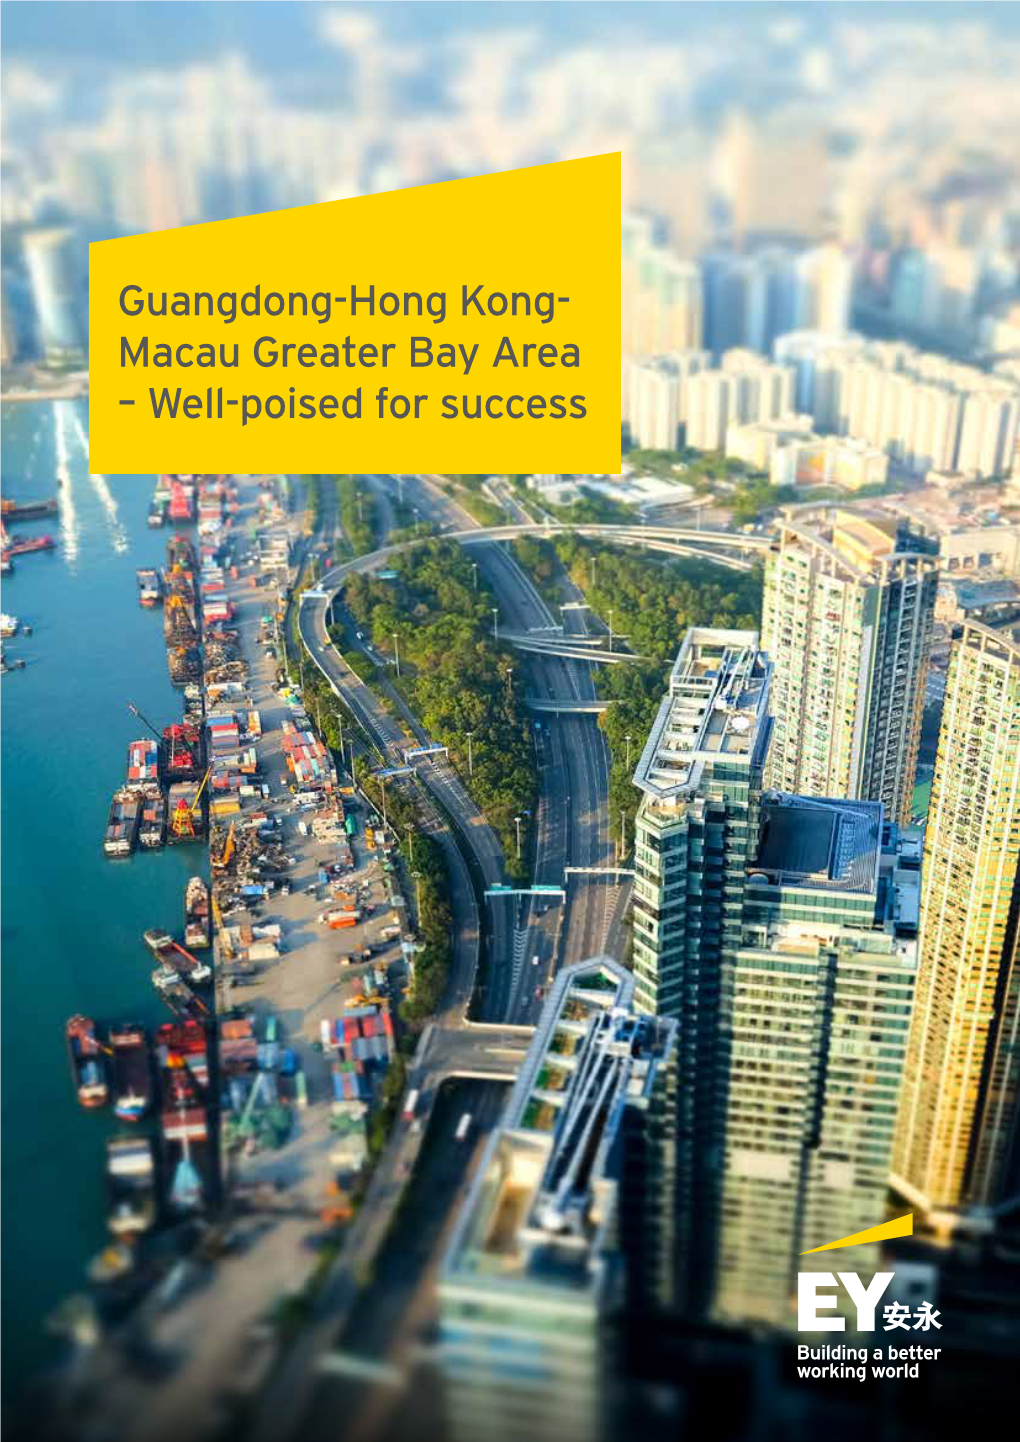 Guangdong-Hong Kong-Macau Greater Bay Area